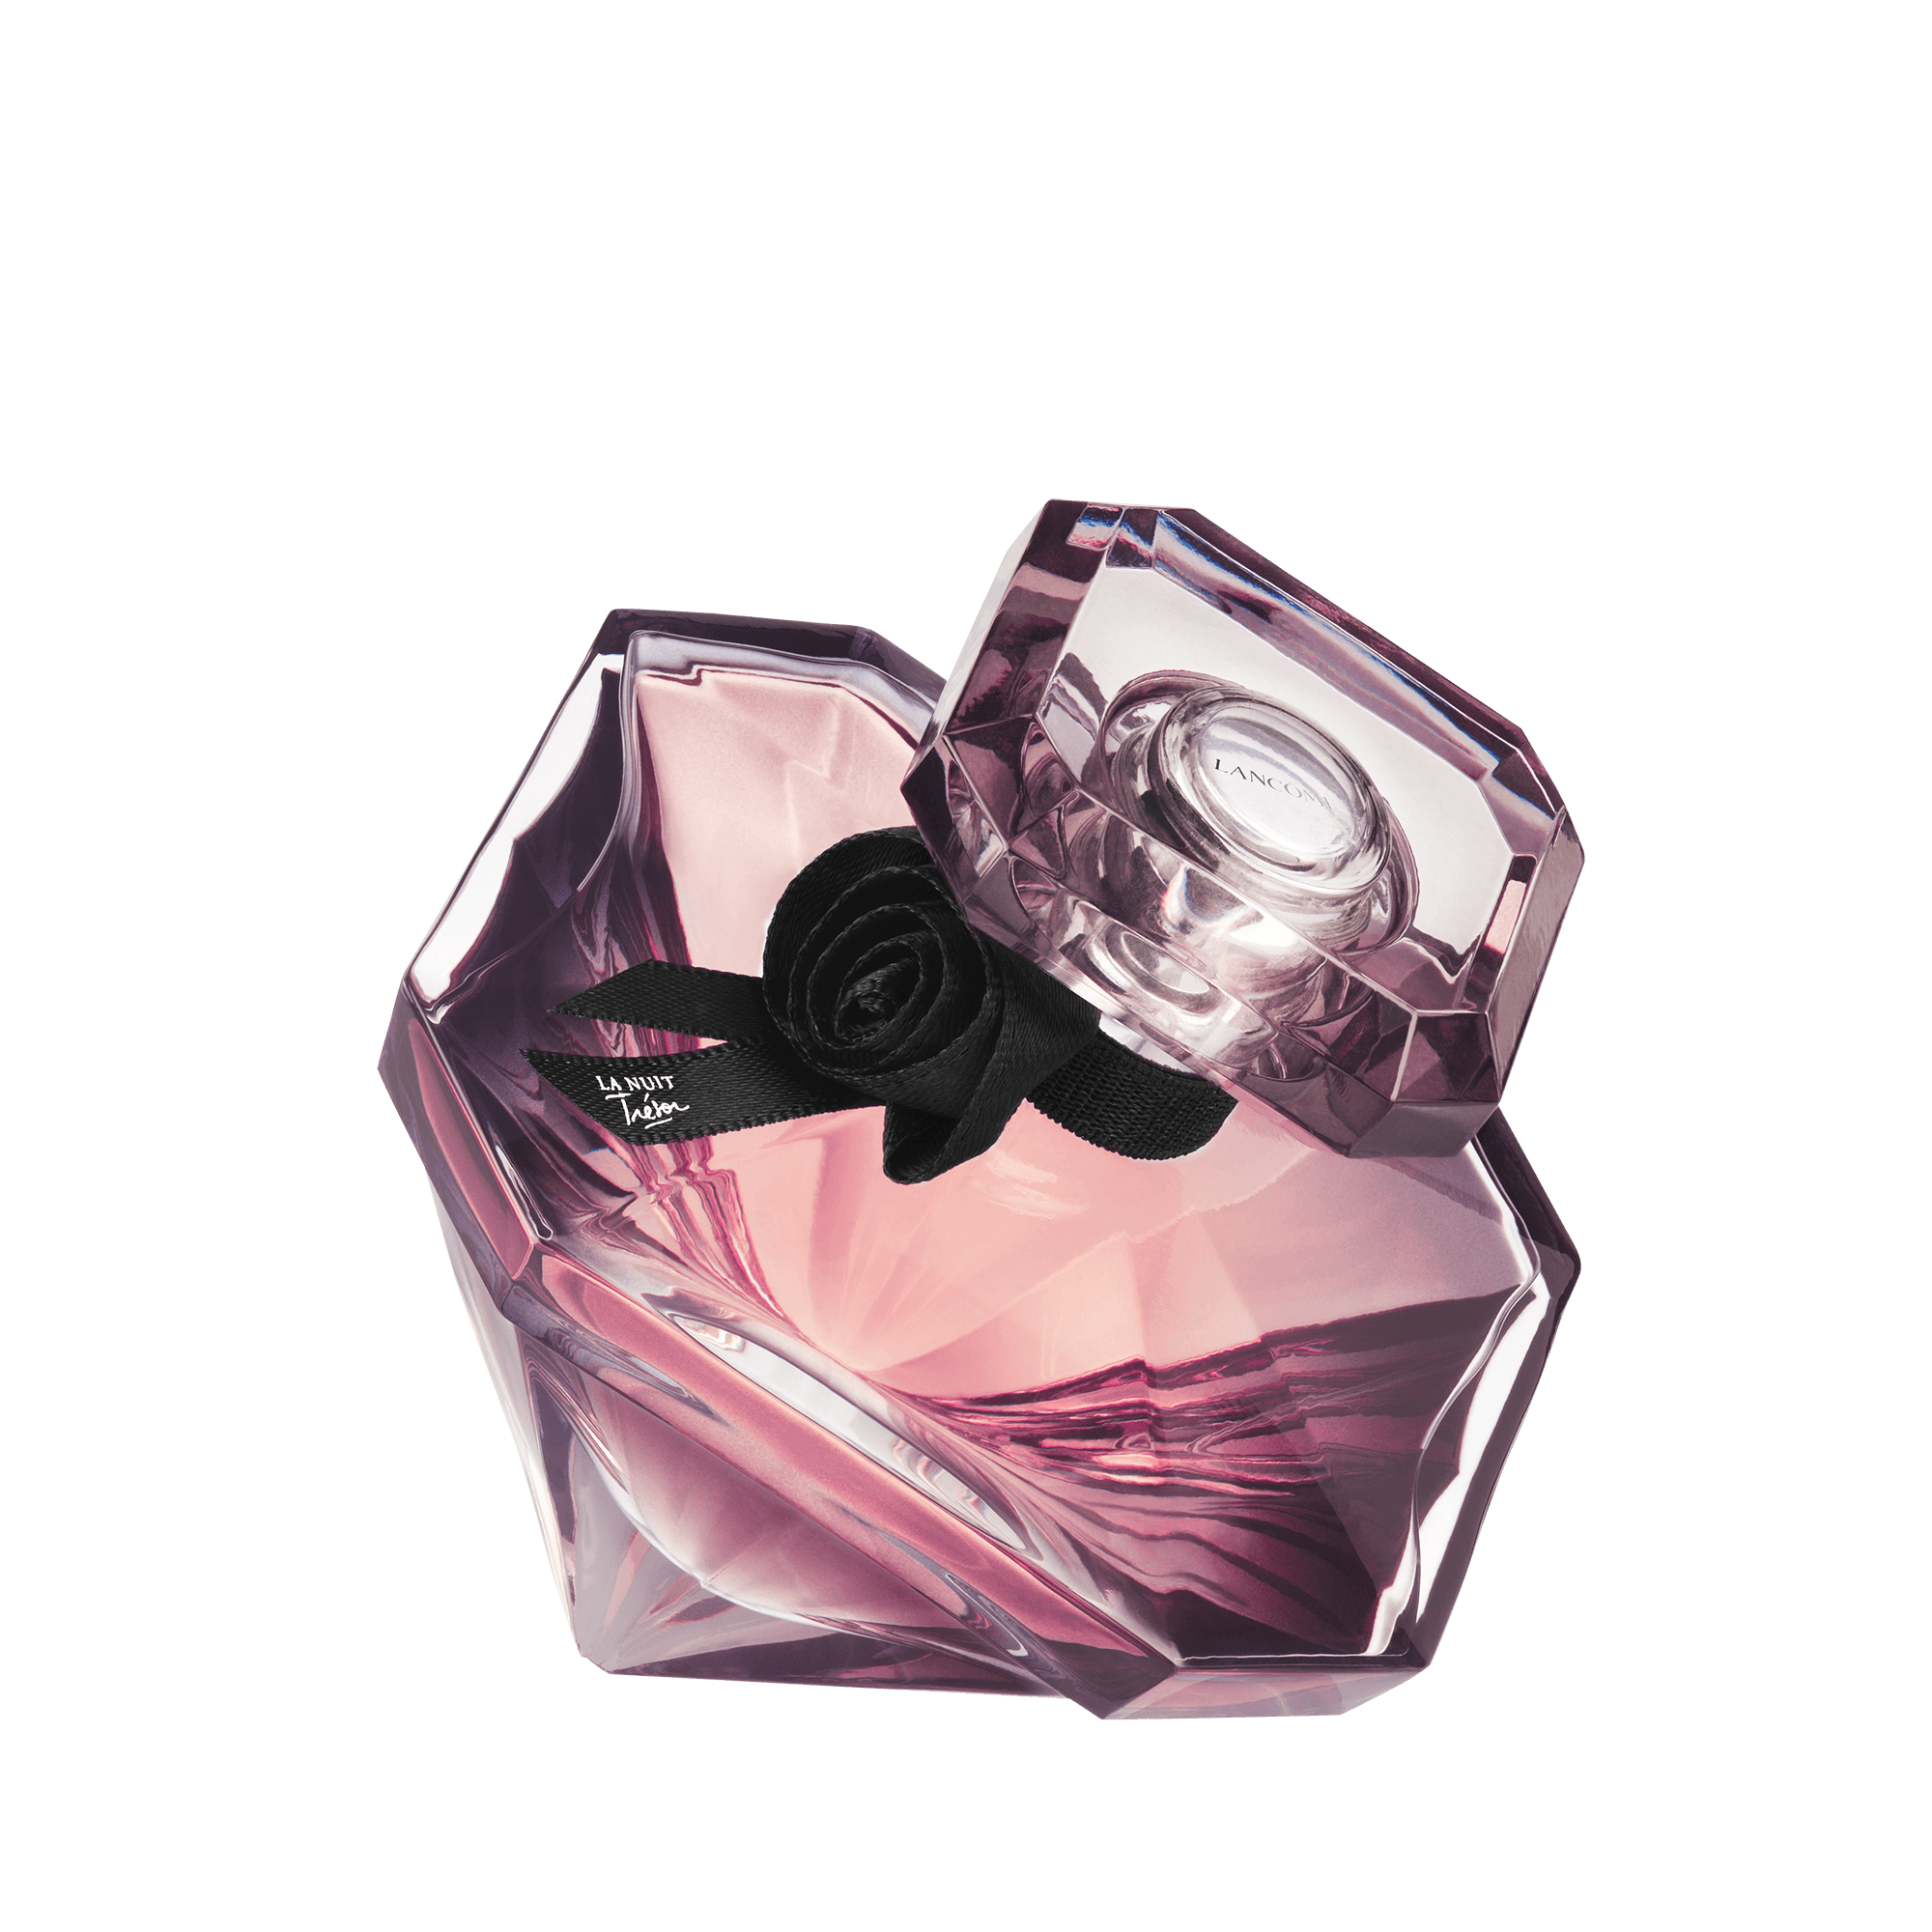 Lancôme Eau De Parfum eau de parfum / 75 ml / dames